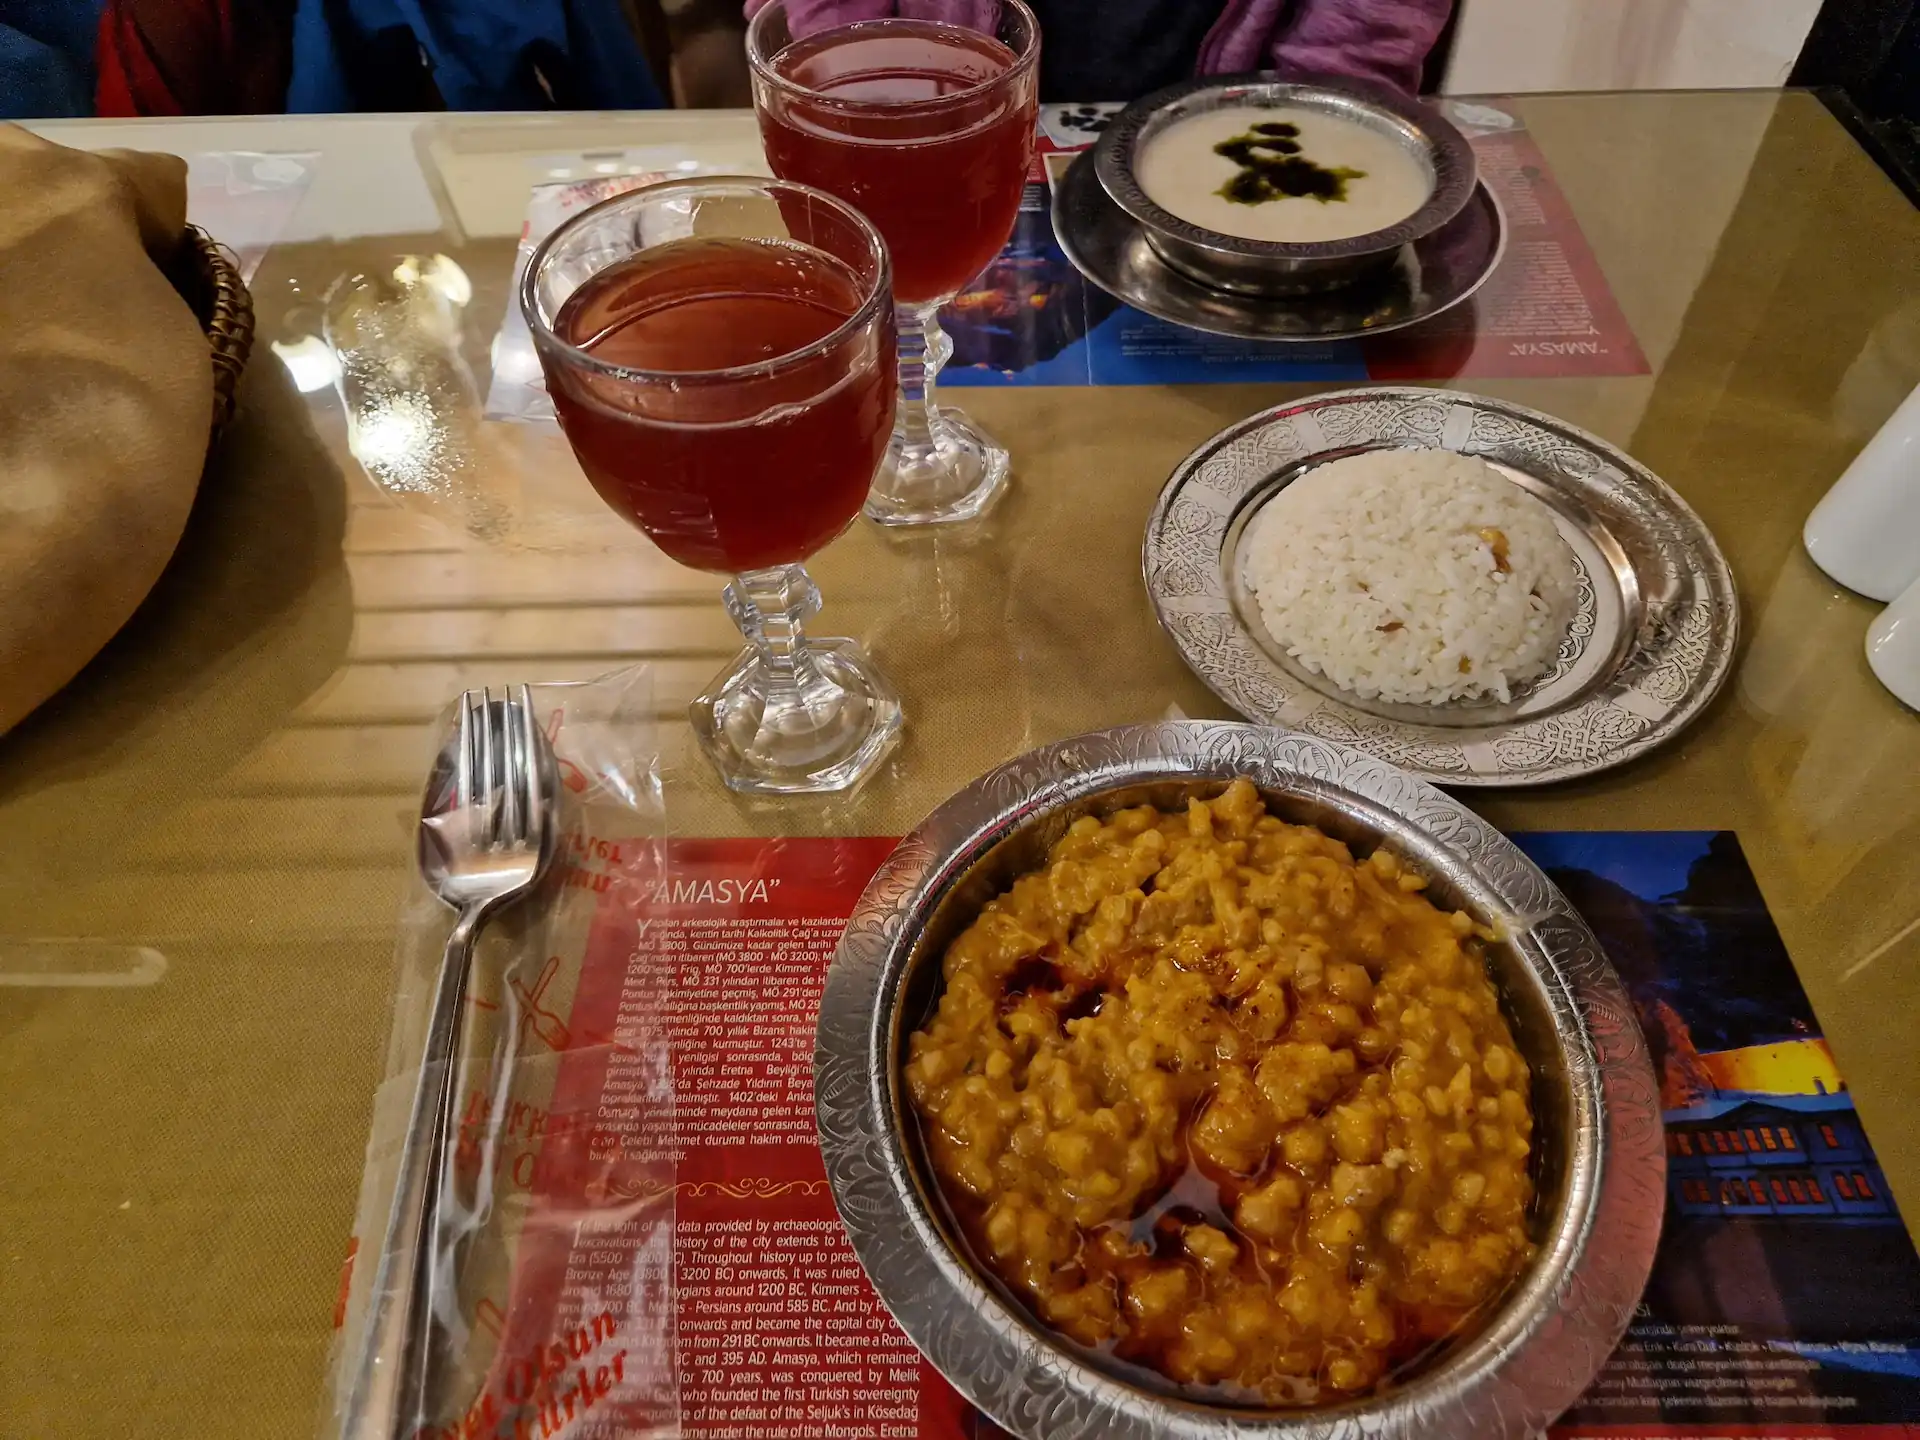 Sur une table, trois plats sont disposés : une soupe blanche, un plat de riz, un porridge à la couleur presque orange. Il y a également deux verres à pied où sont servis des jus aux épices.